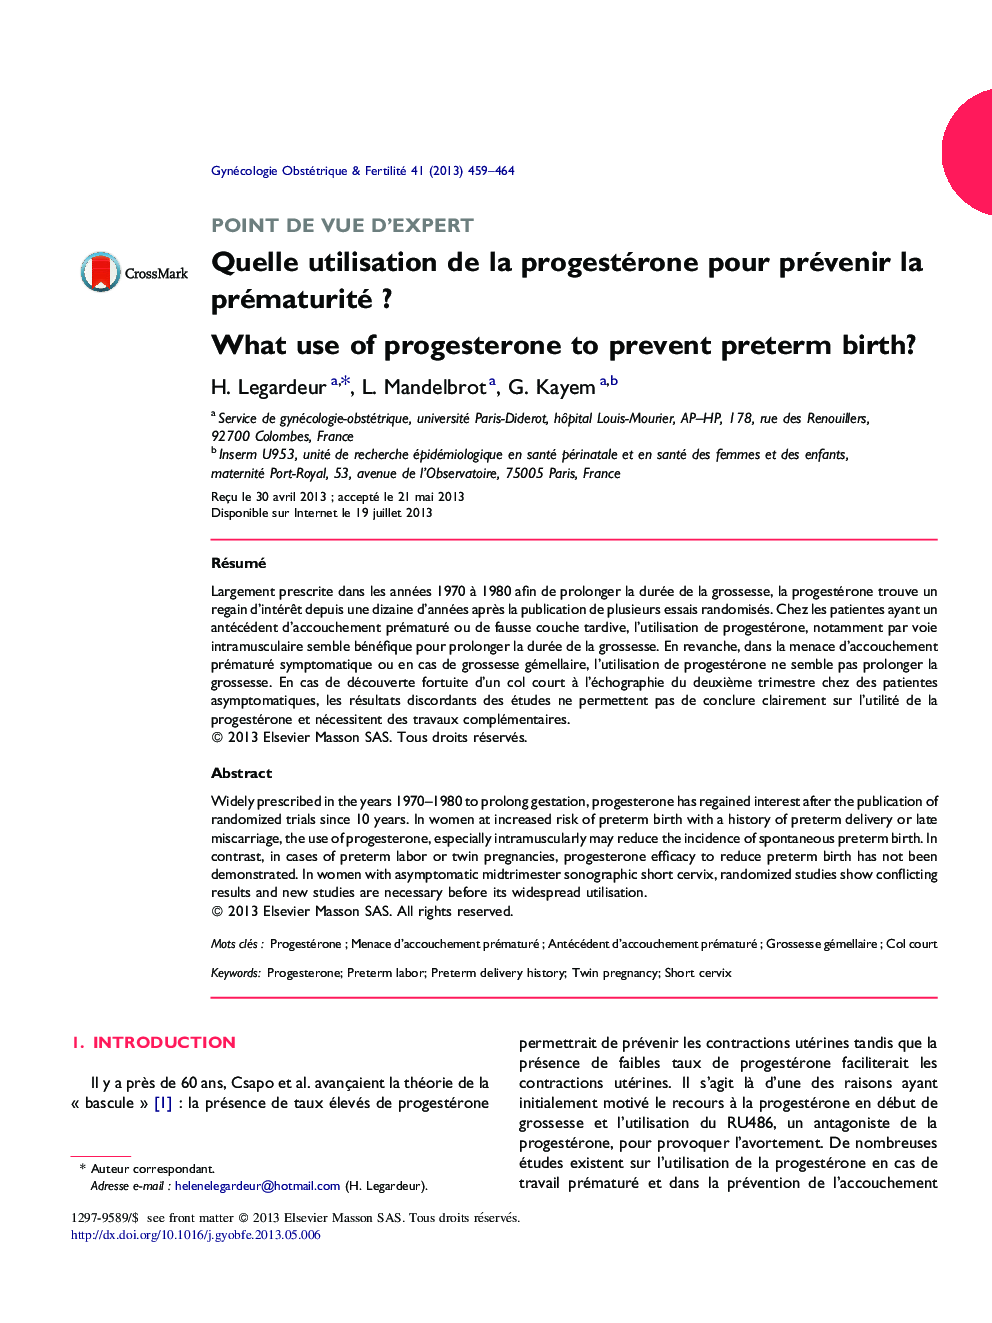 Quelle utilisation de la progestérone pour prévenir la prématurité ?